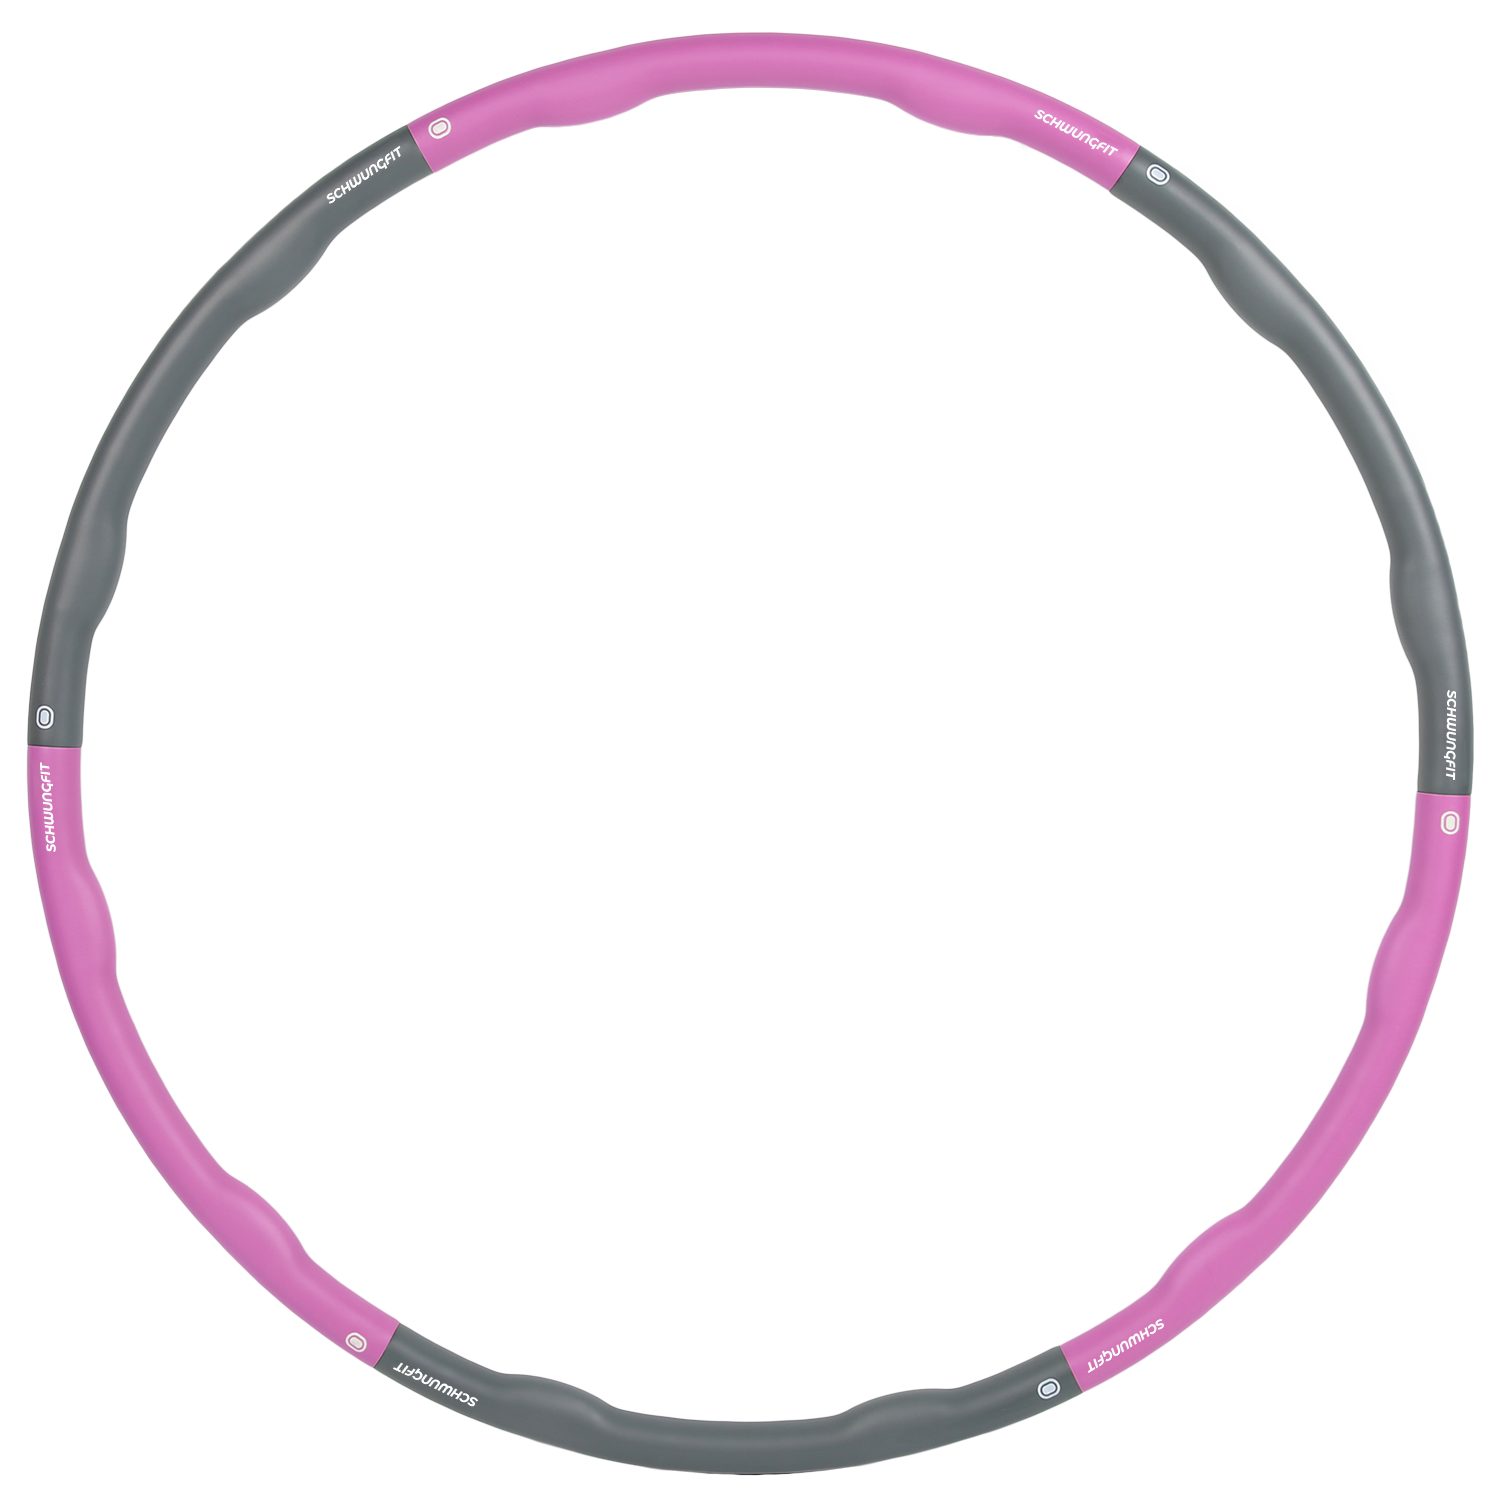 Schwungfit Hula-Hoop-Reifen 1,5 Kg Wellendesign mit 100cm Durchmesser (Hula Hoop Fitness Reifen für Erwachsene und Kinder), mit Schaumstoff Polster & Massagefunktion